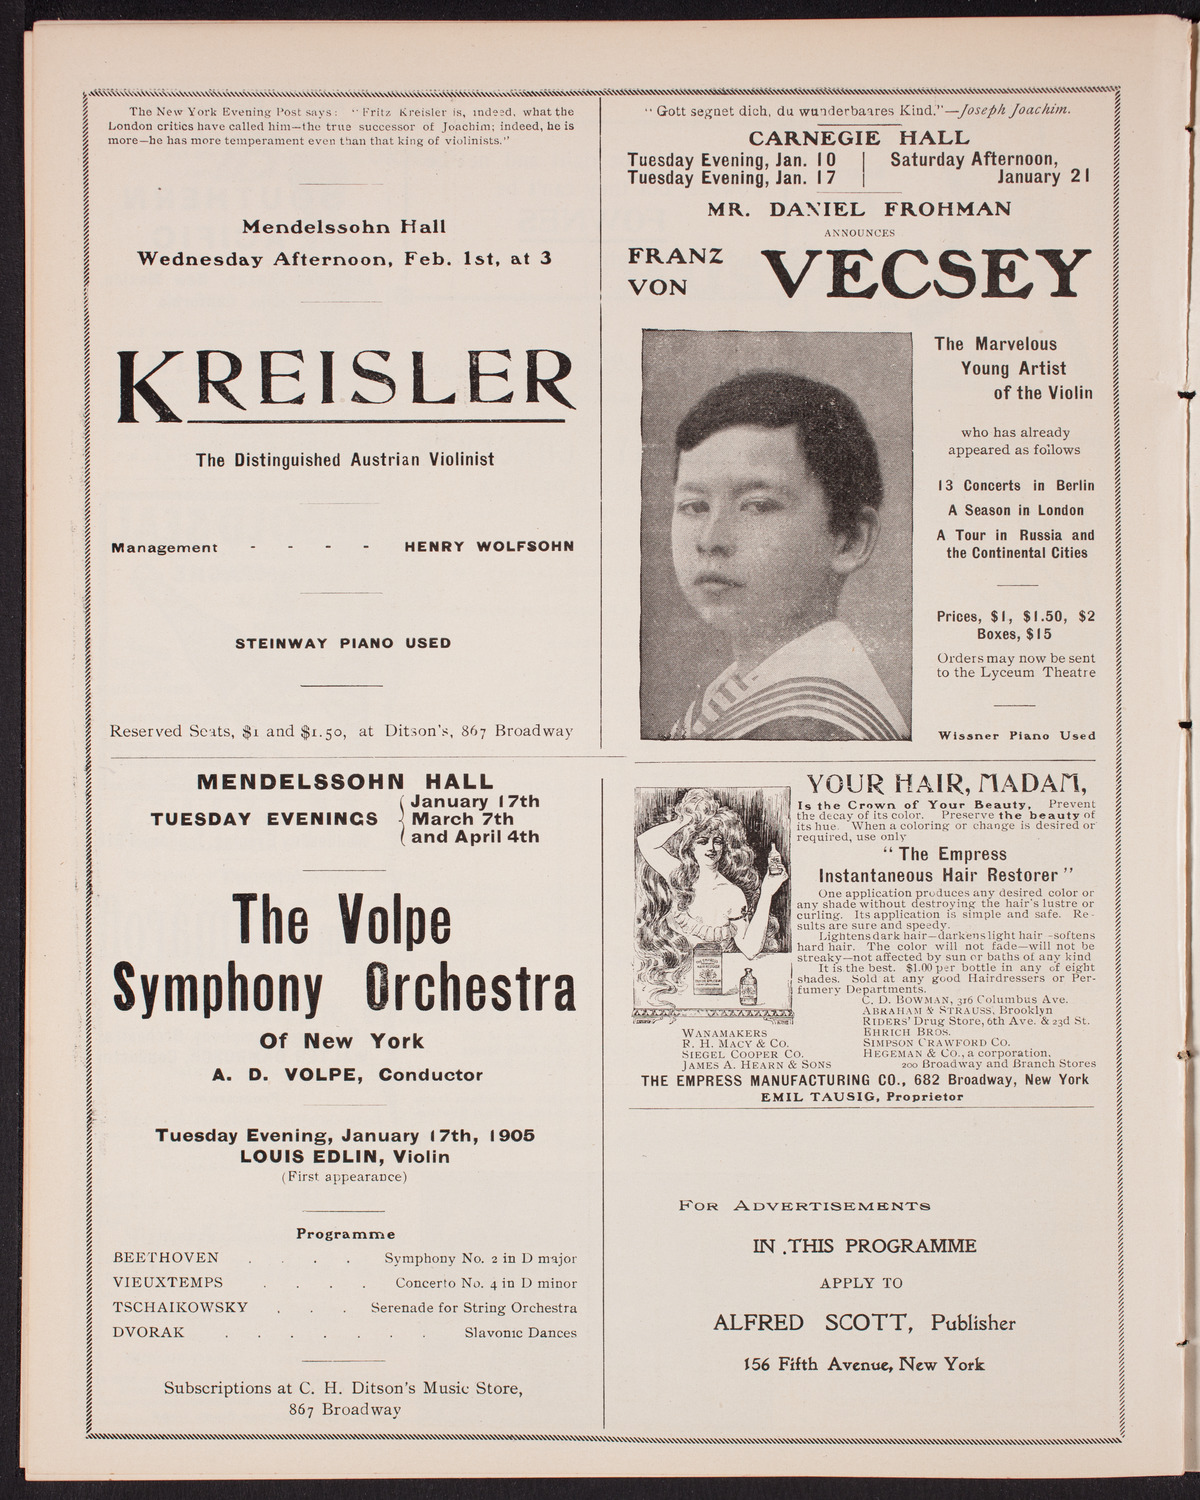 New York Philharmonic, January 6, 1905, program page 10